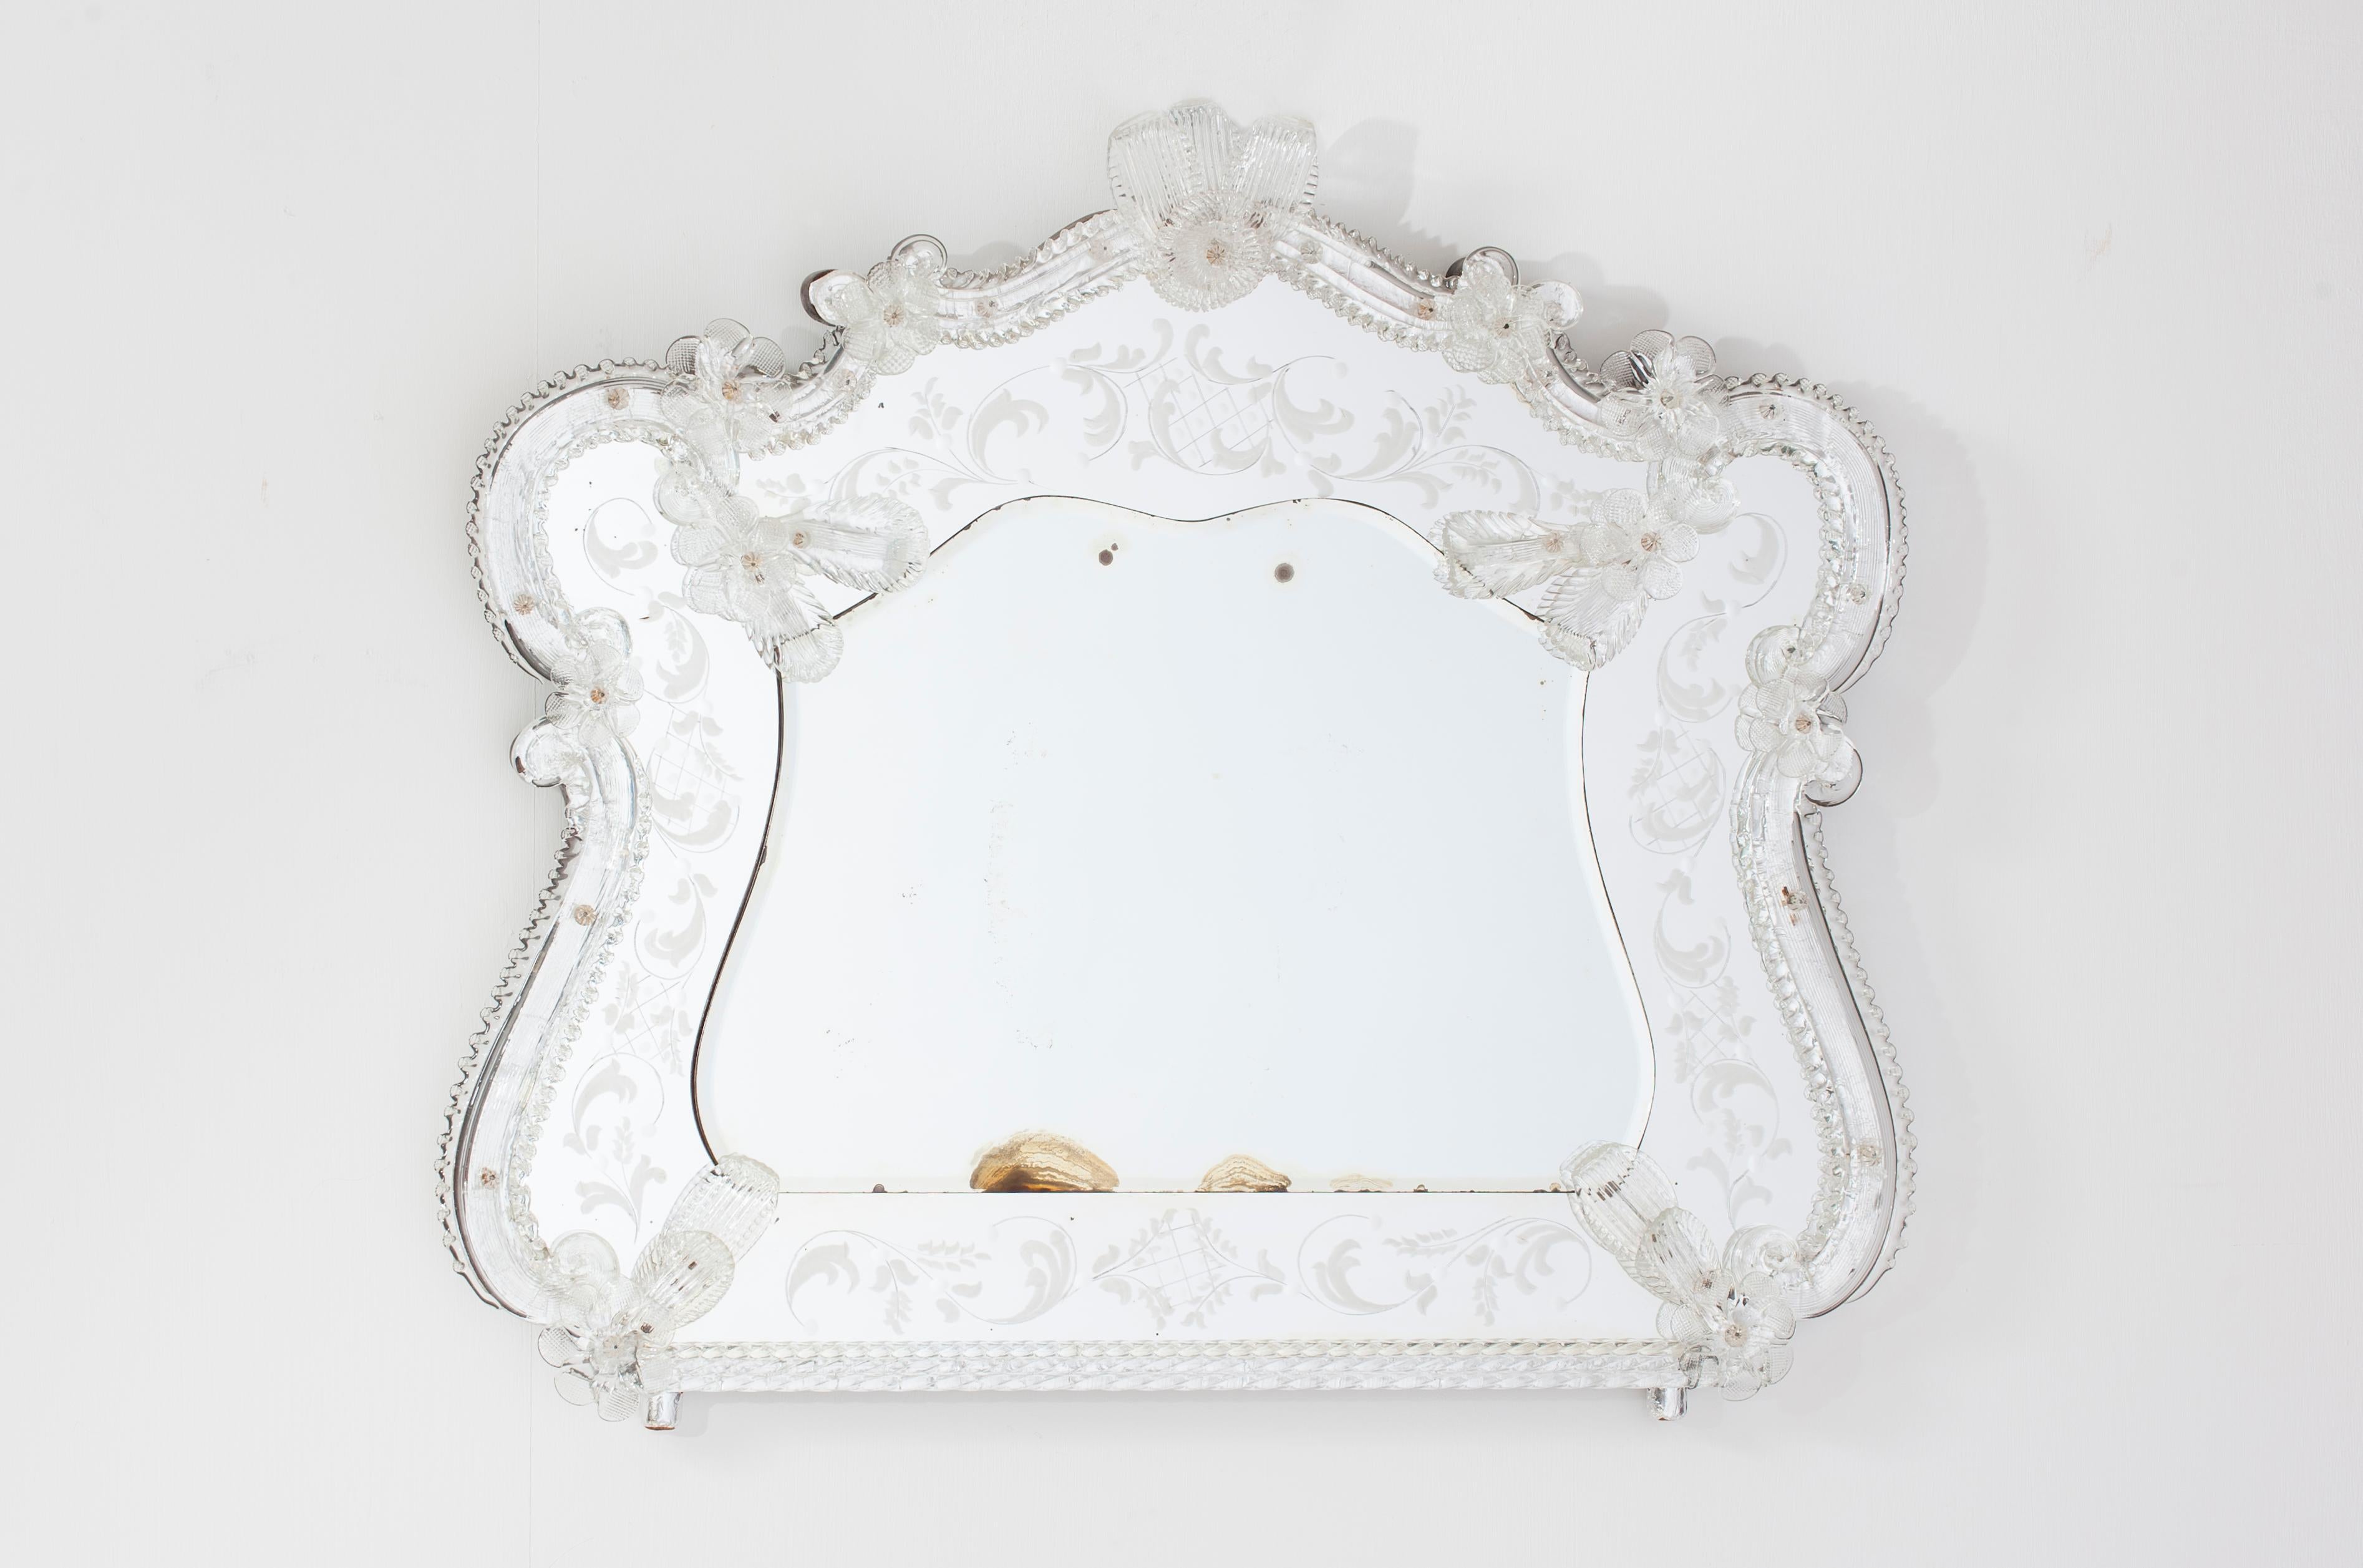 Venezianischer Spiegel aus geblasenem Murano Glas klar mit Blumen 1960er Jahre
Der Spiegel ist völlig transparent und hat einen silbernen Hintergrund, der den Glanz eines echten venezianischen Spiegels erzeugt. Der gesamte Rand ist mit